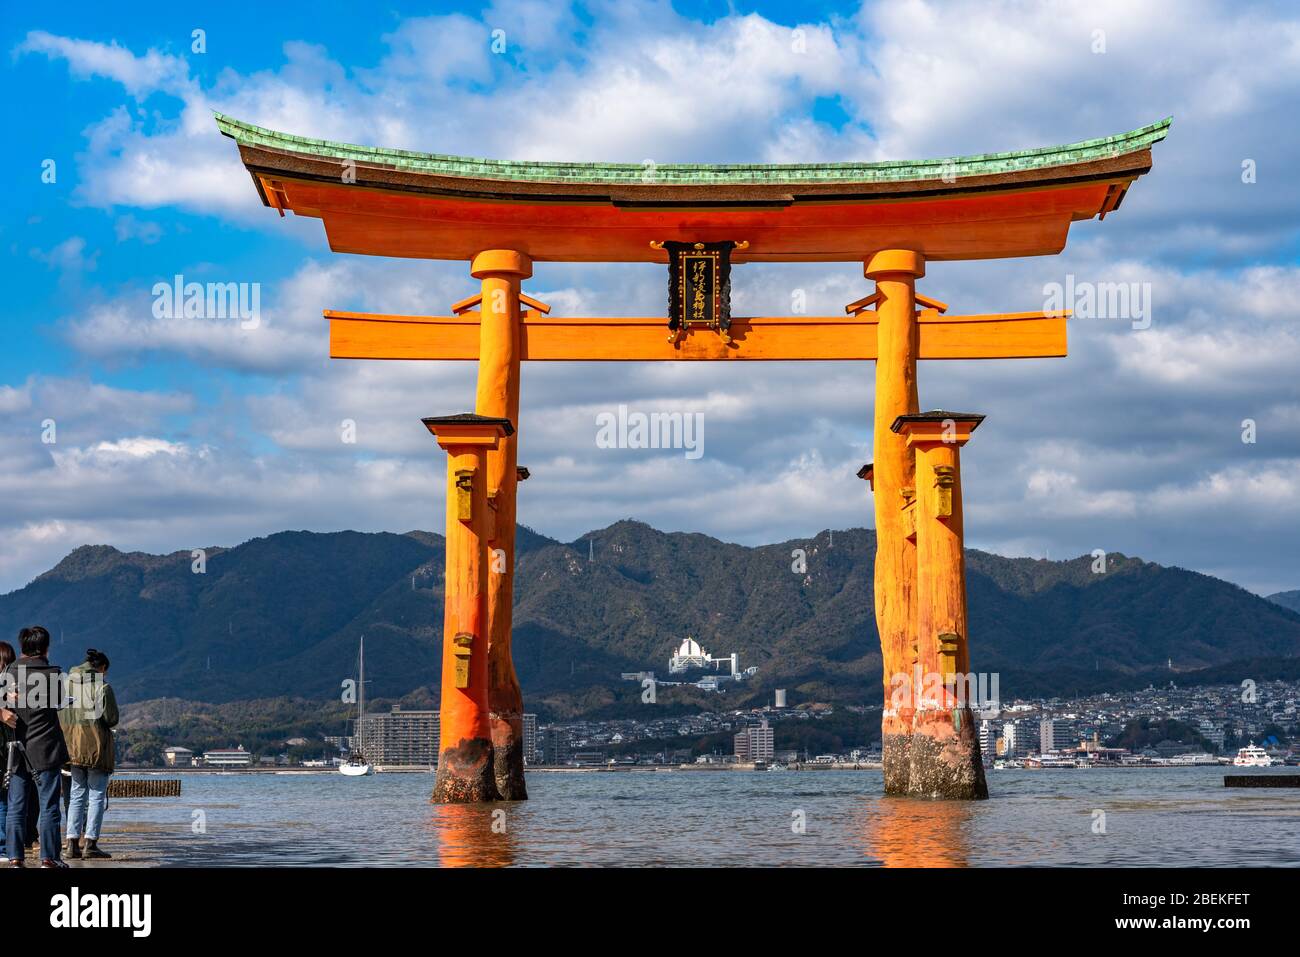 La porte d'entrée flottante du géant rouge Grand O-Torii se trouve sur la plage de la baie de l'île de Miyajima, à marée basse, le jour ensoleillé. Nouvelle année Hatsumode dans le sanctuaire d'Itsukushima Banque D'Images